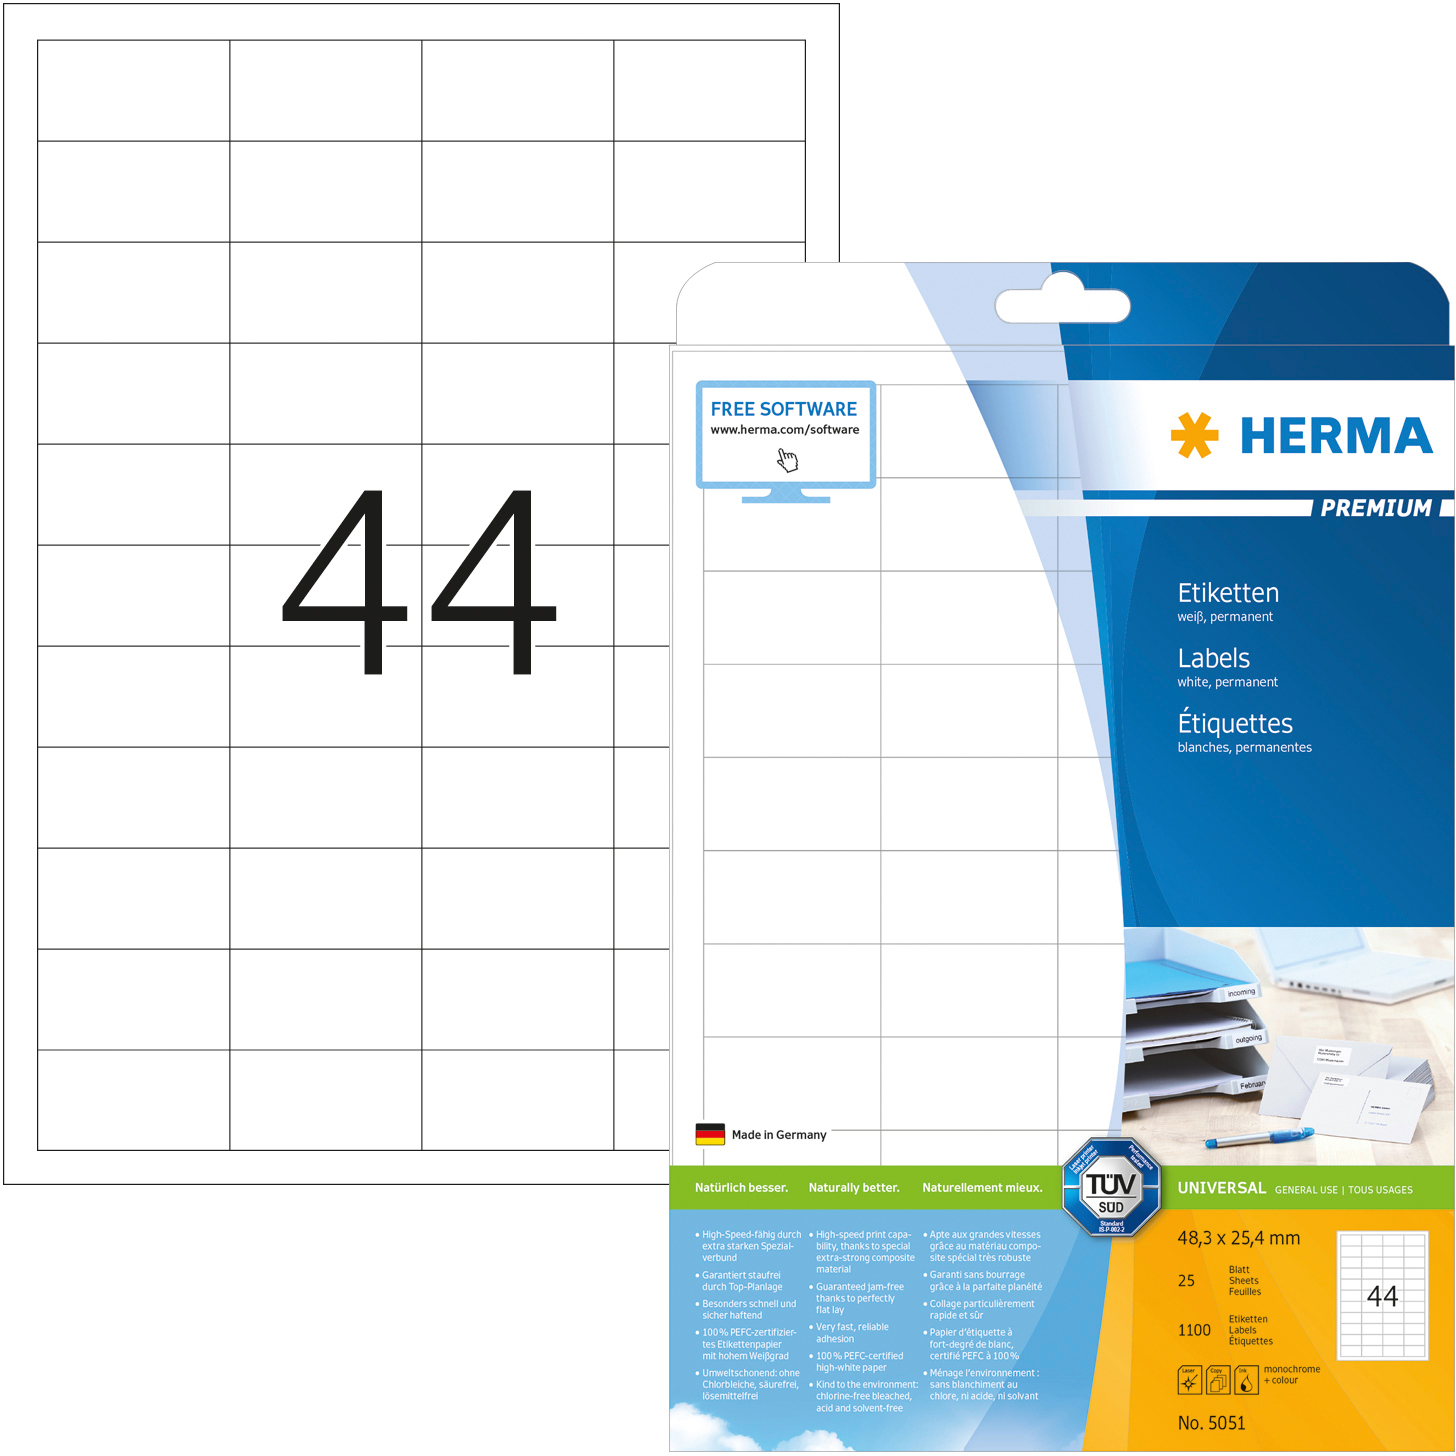 HERMA Etiquettes Premium 48,3×25,4mm 5051 blanc 1100 pcs.